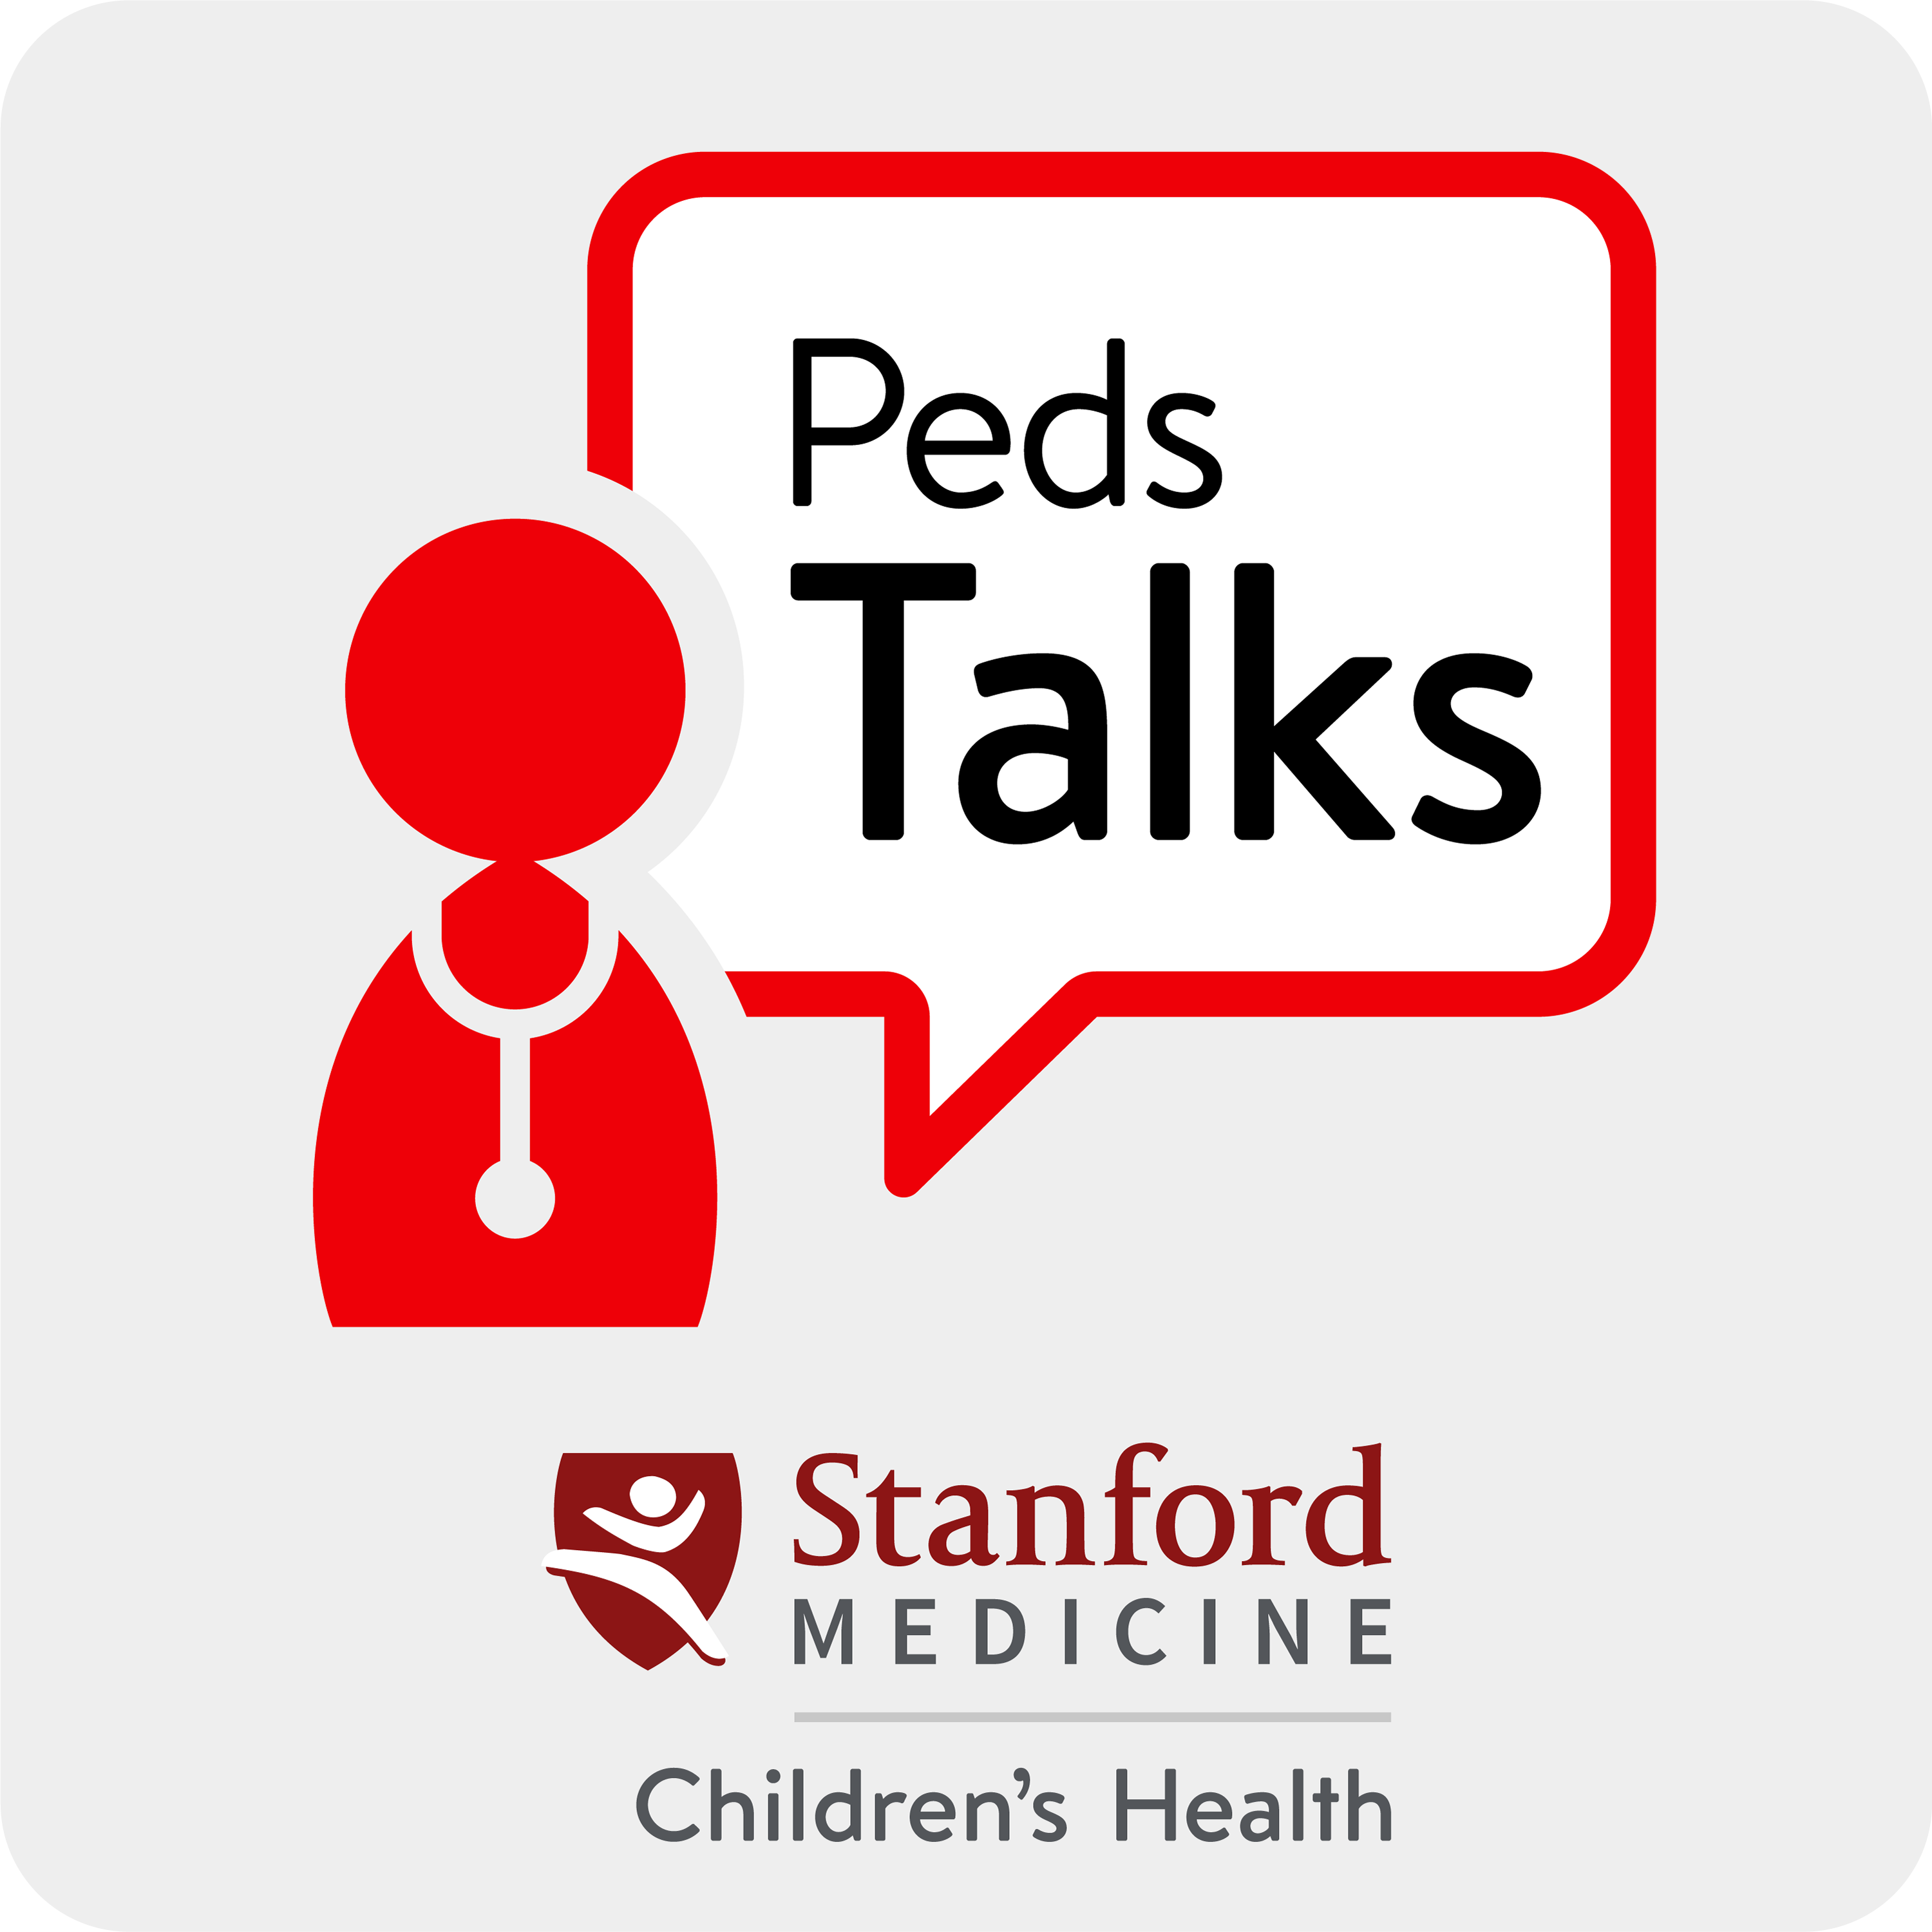 PedsTalks by Stanford Medicine Children’s Health